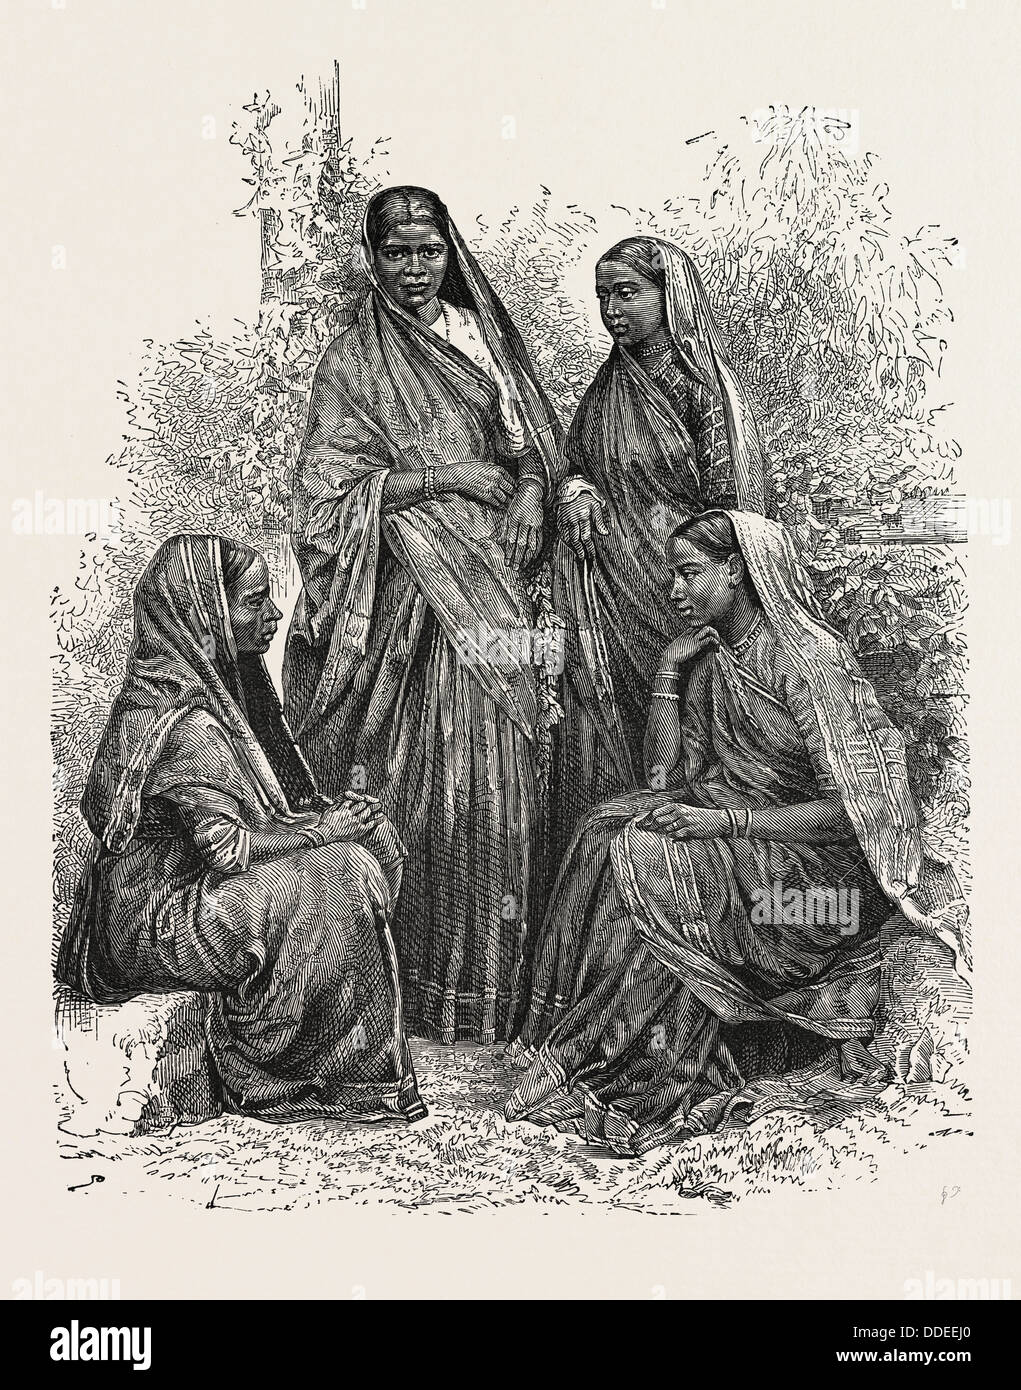 Les femmes autochtones (Présidence de Bombay), se convertit au christianisme. La présidence de Bombay était une province de l'Inde britannique Banque D'Images